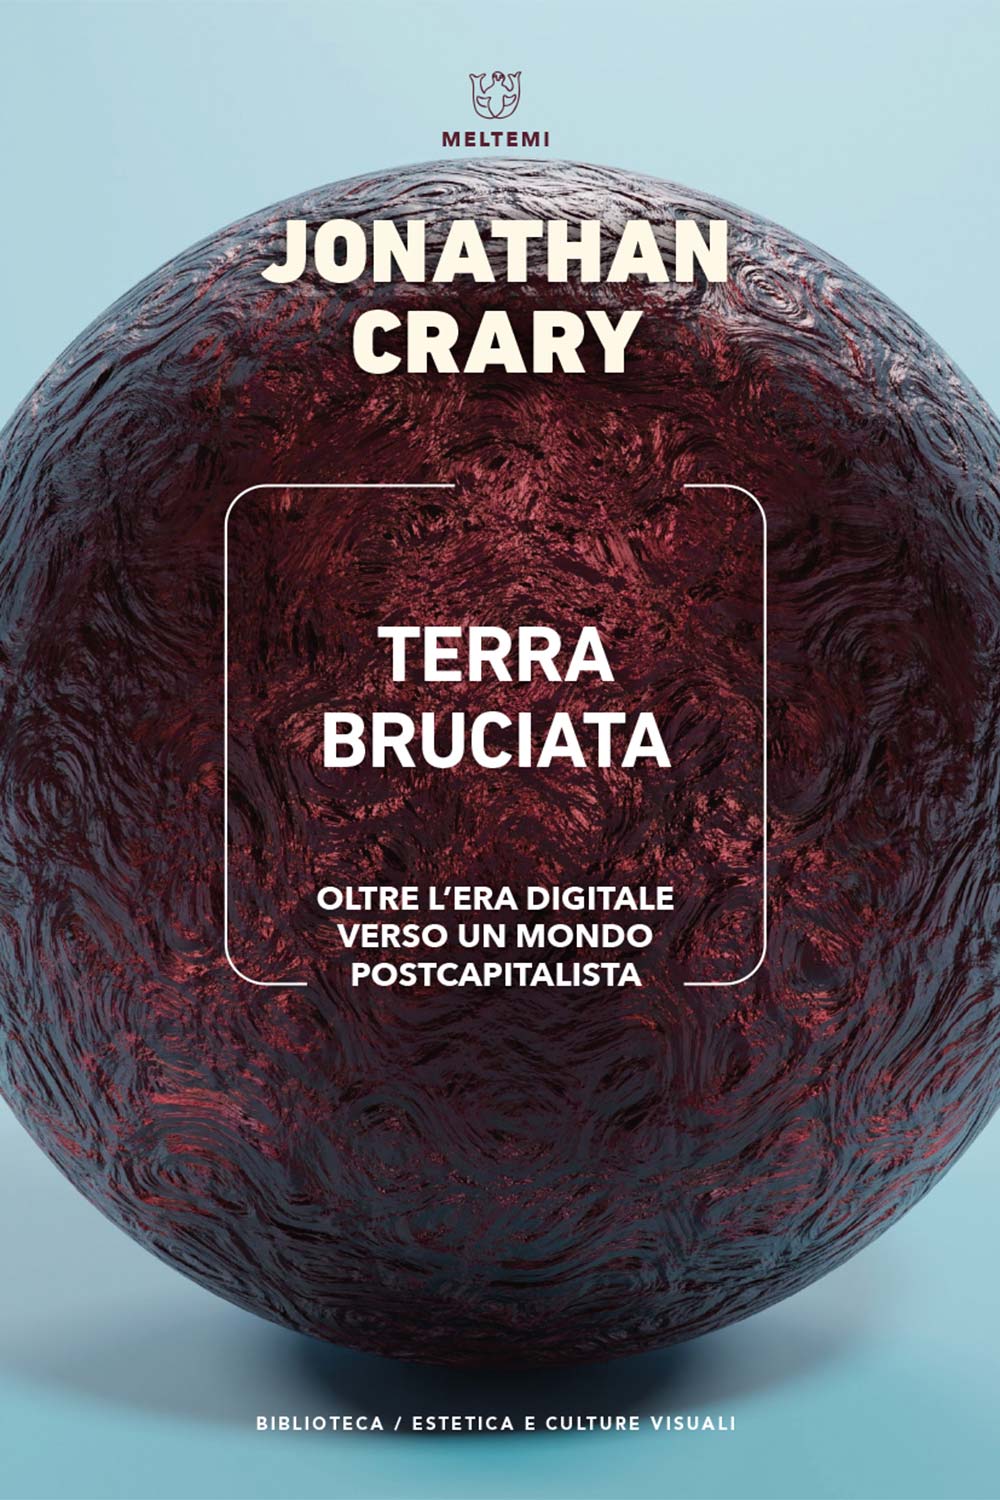 Jonathan Crary, Terra Bruciata, Meltemi, 2023